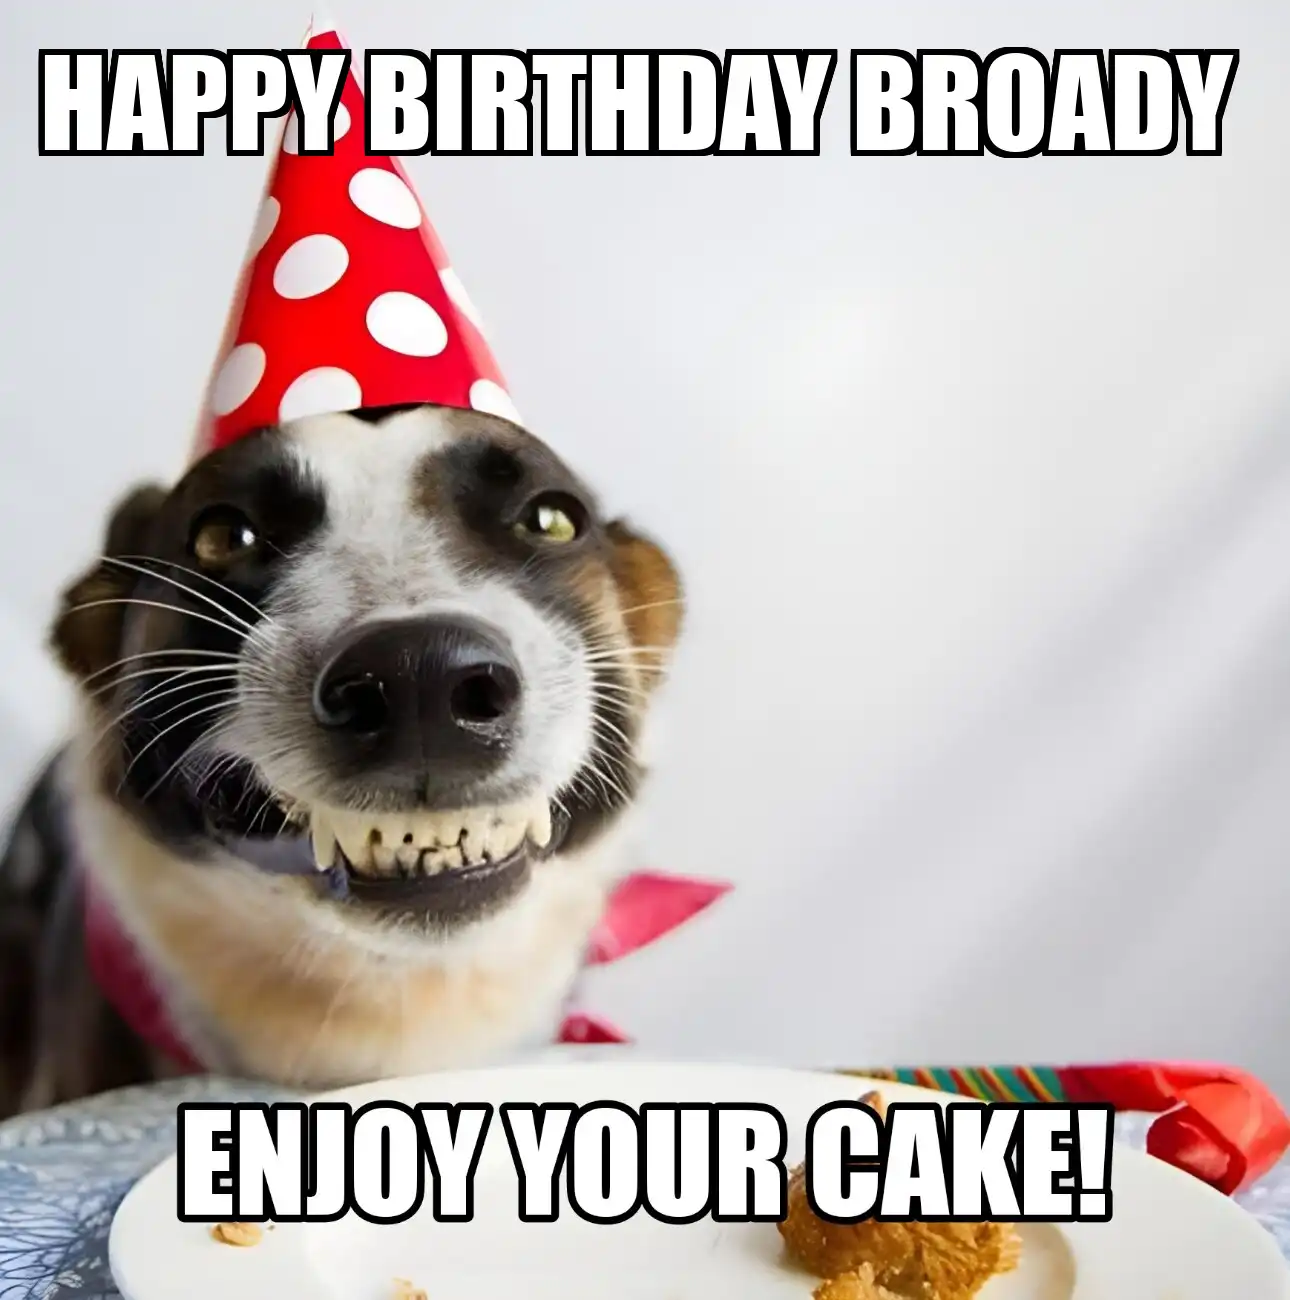 Happy Birthday Broady Enjoy Your Cake Dog Meme